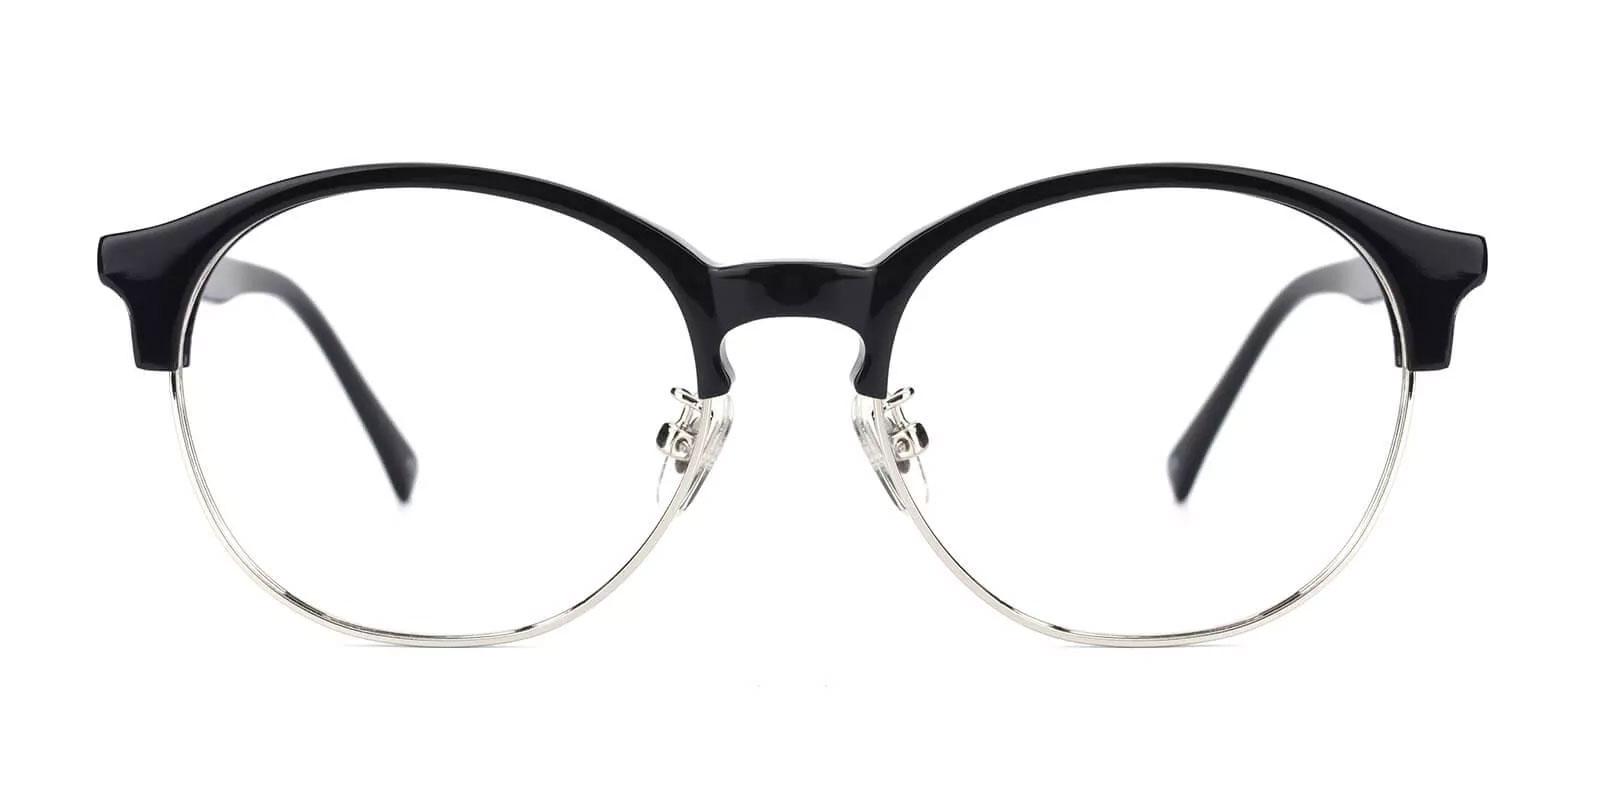 Pelsor Black Combination Eyeglasses , NosePads Frames from ABBE Glasses